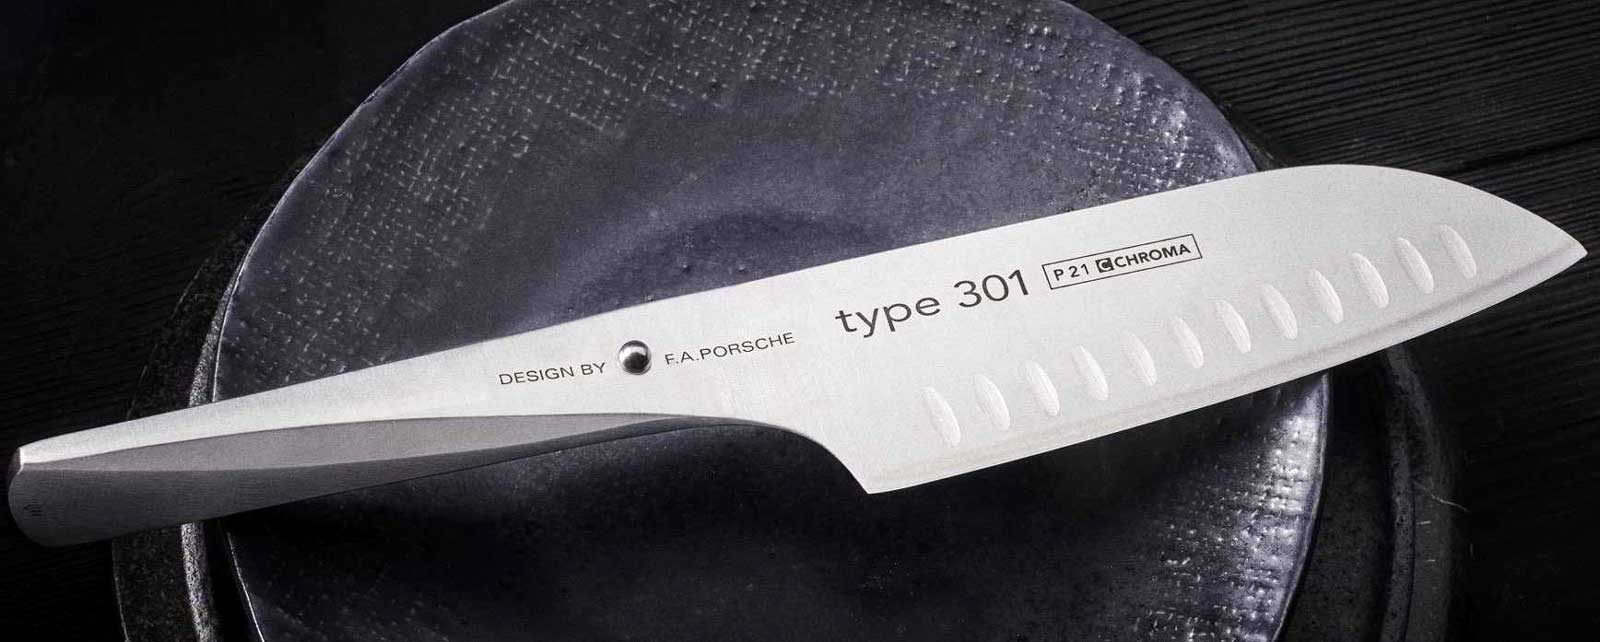 CHROMA type 301 - Design av FA Porsche - kokkekniv Disse innovative knivene Type 301, designet av designselskapet FA Porsche, apner et nytt kapittel i utviklingen av kjoekkenkniver.